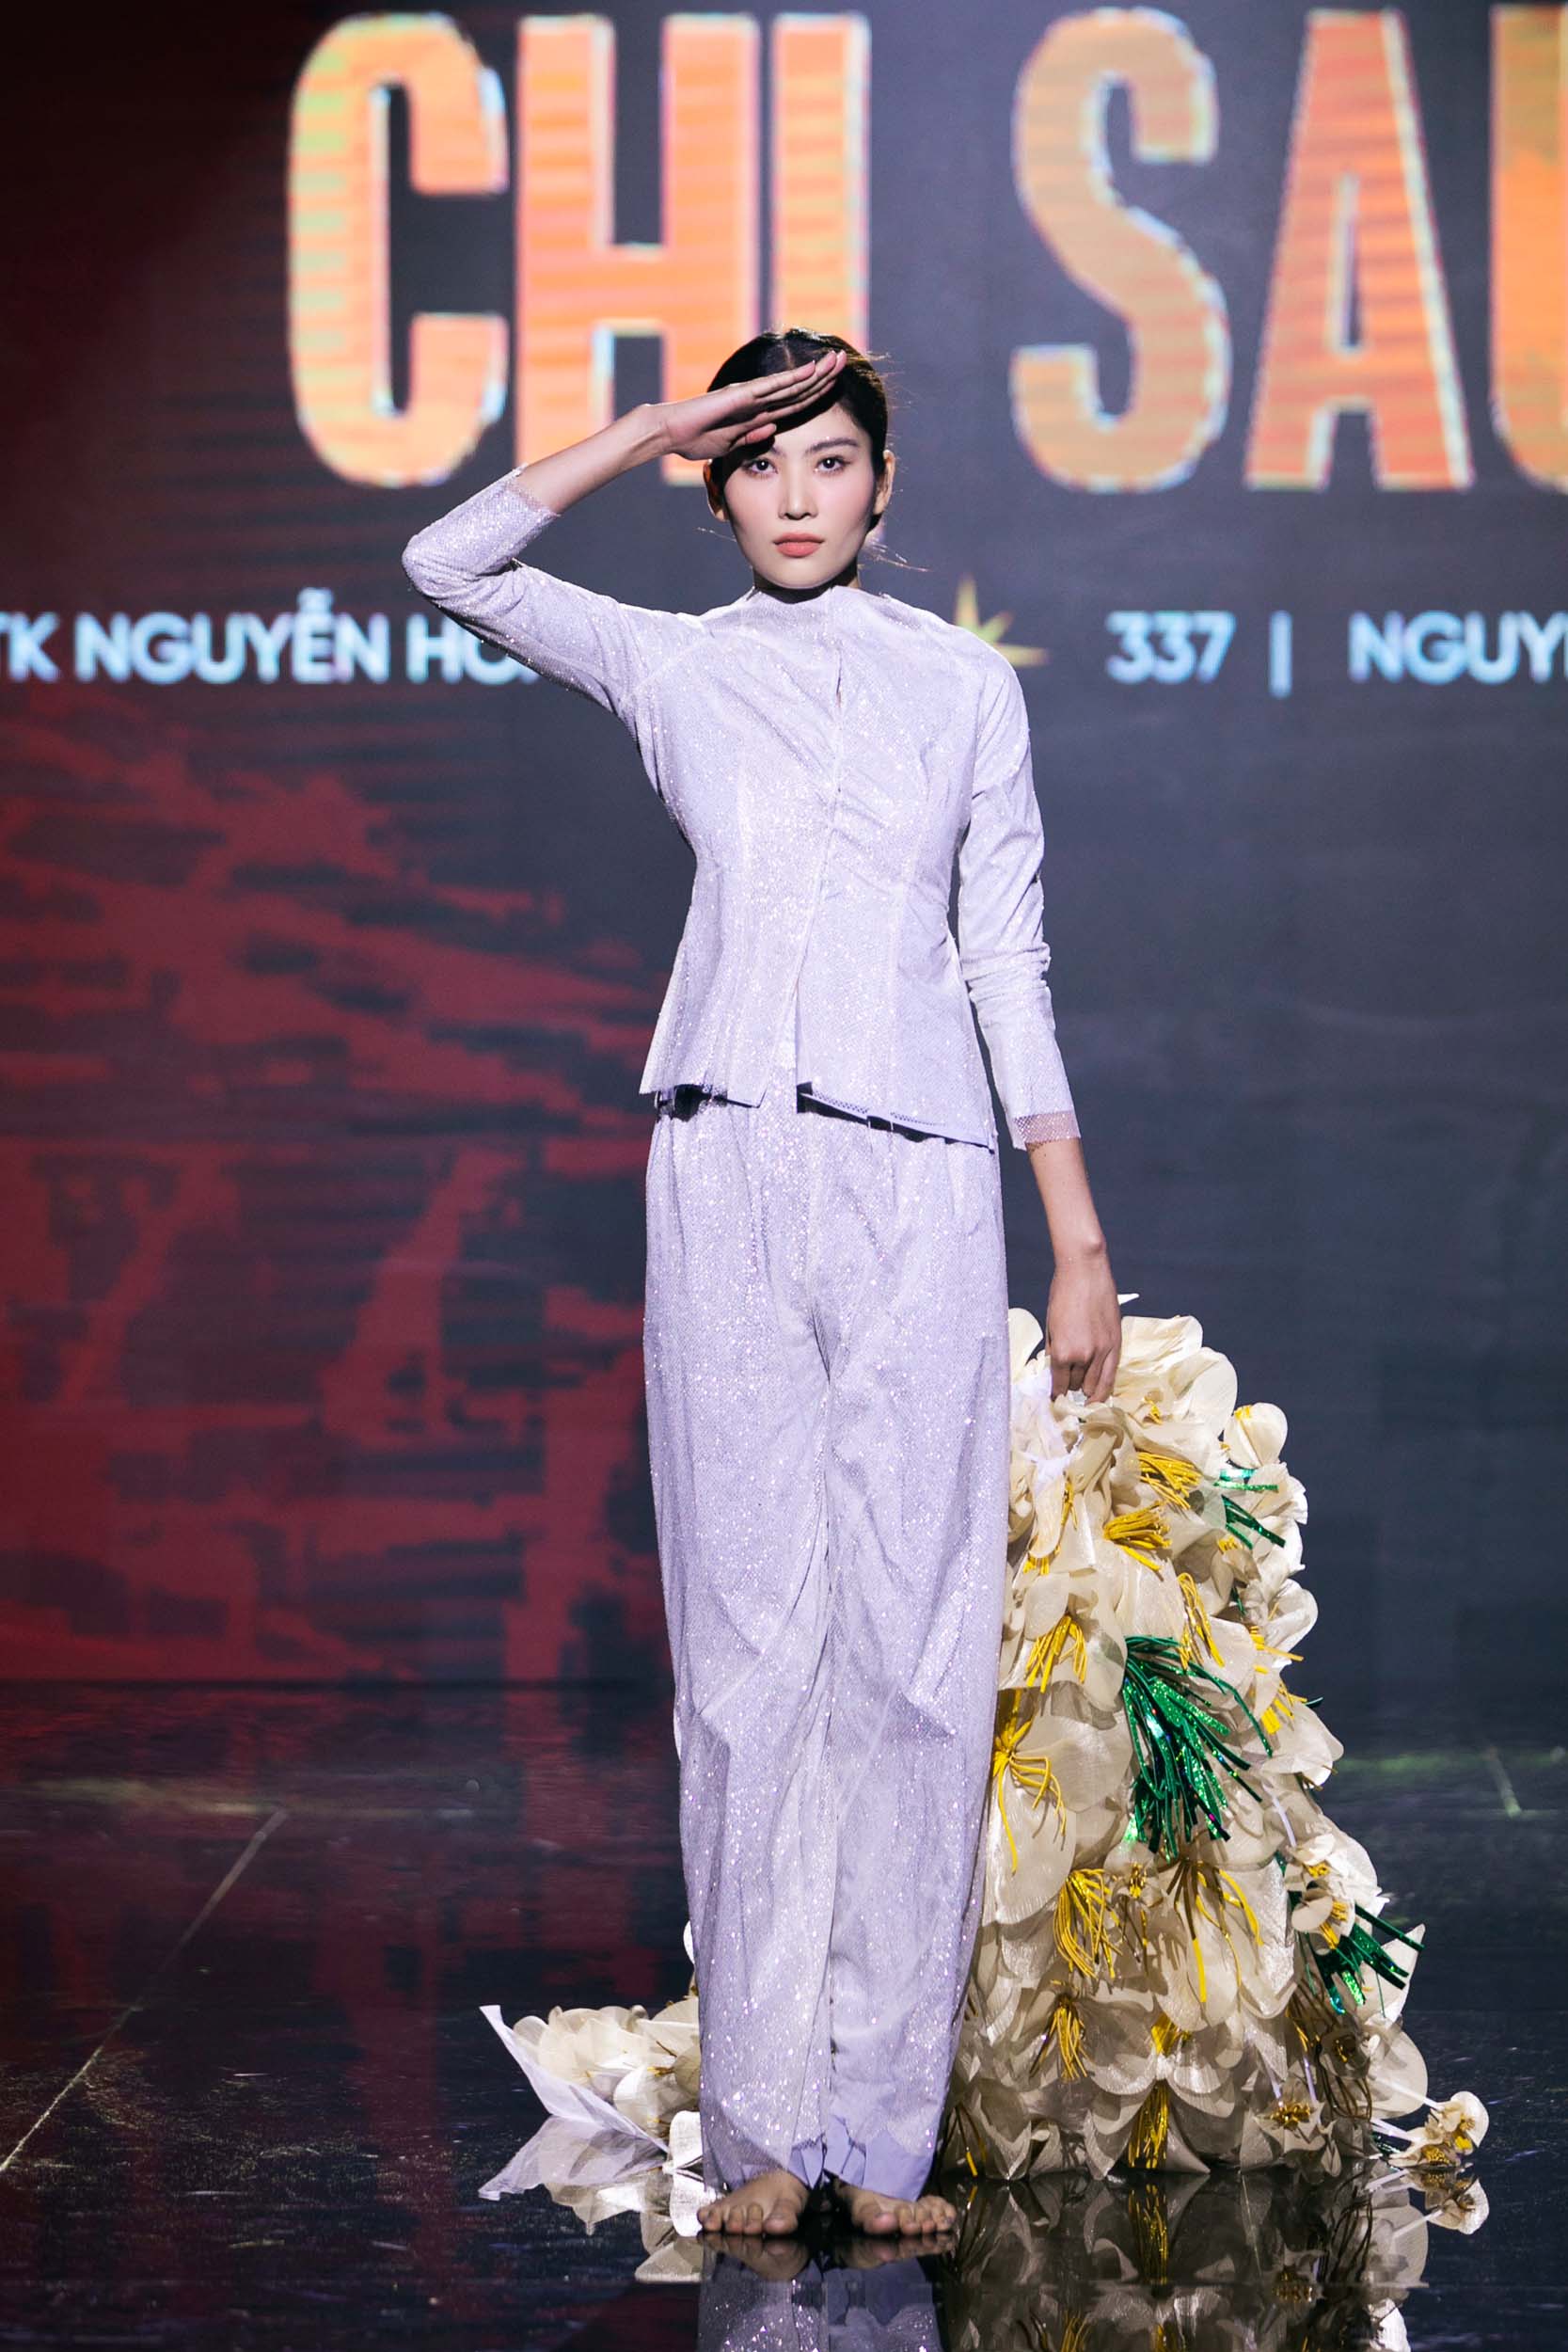 Bánh tráng trộn- gỏi cuốn- tôm tre mỹ nghệ trở thành trang phục dân tộc lộng lẫy tại Hoa hậu hoàn vũ Việt Nam